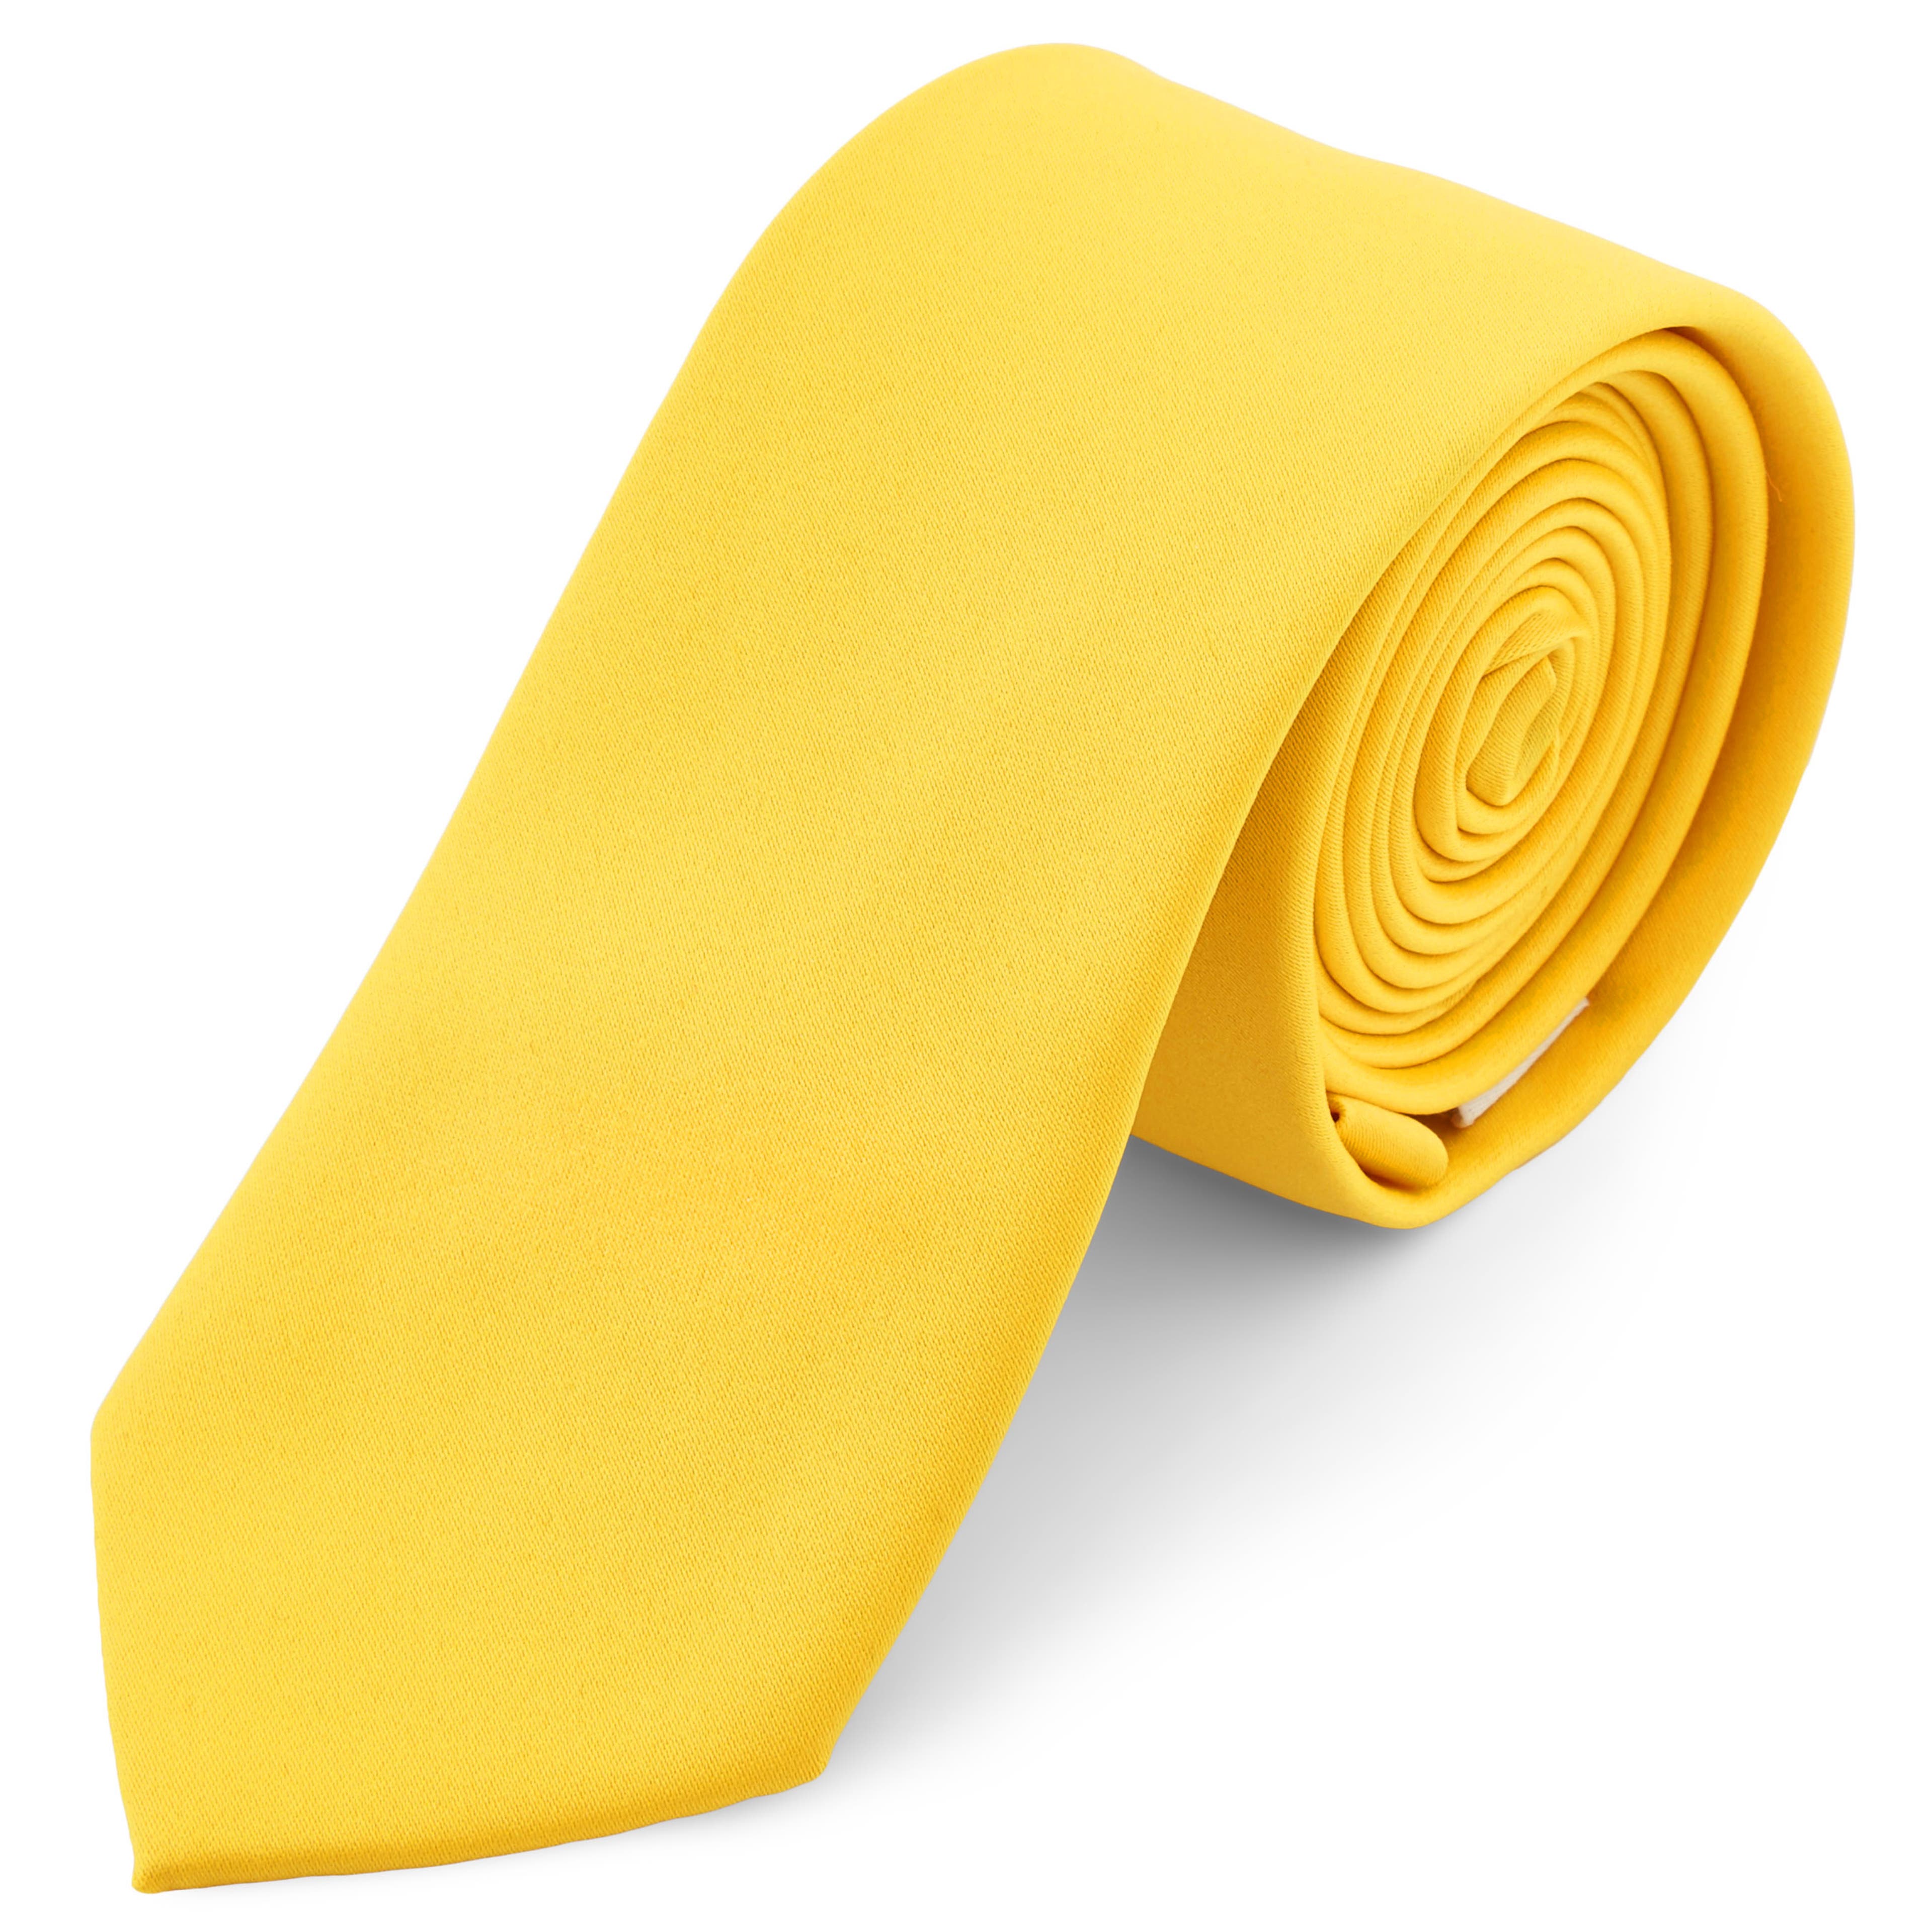 Kanárisárga egyszerű nyakkendő - 6 cm